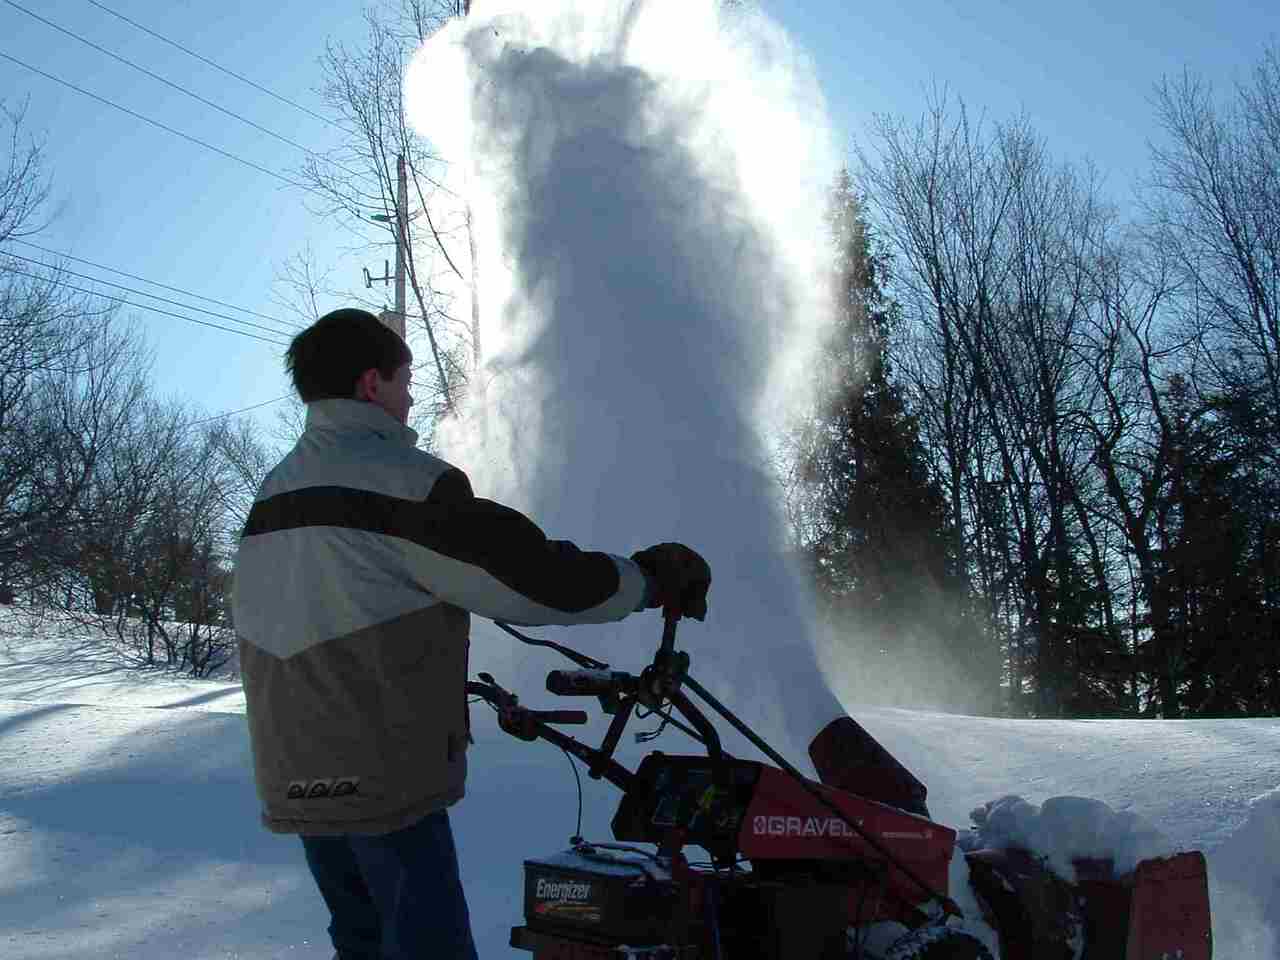 logan blowing snow inti sun 2 web.jpg